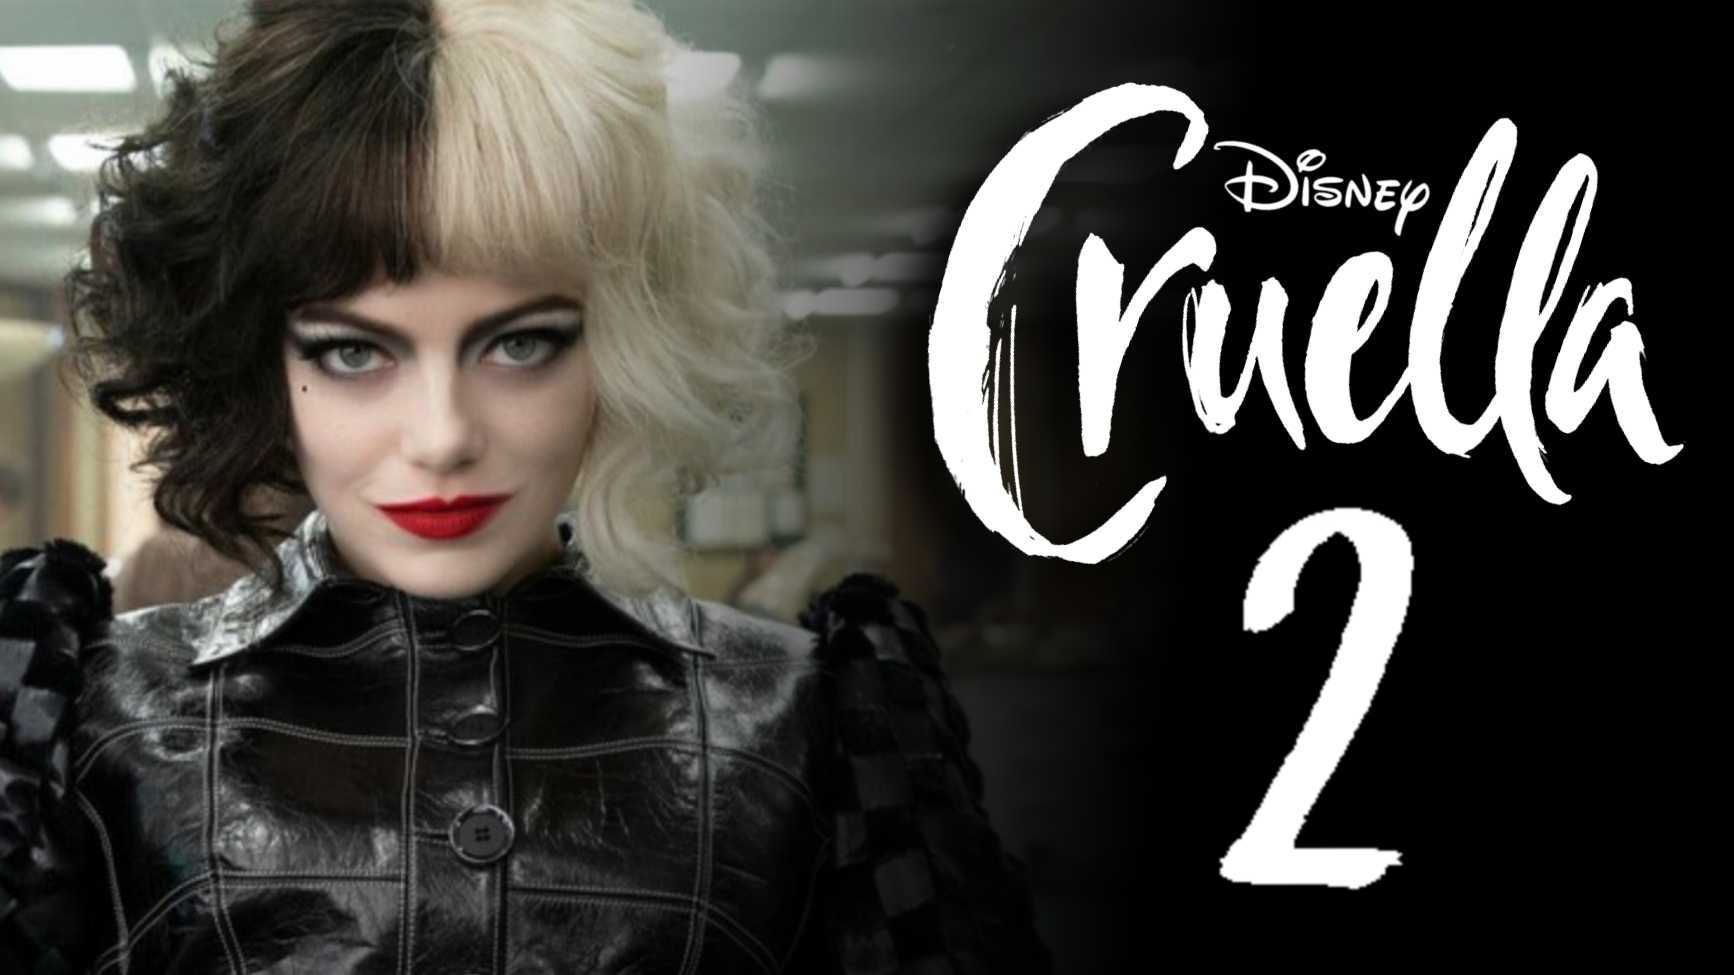 Emma Stone Officially Boards ‘Cruella’ Sequel